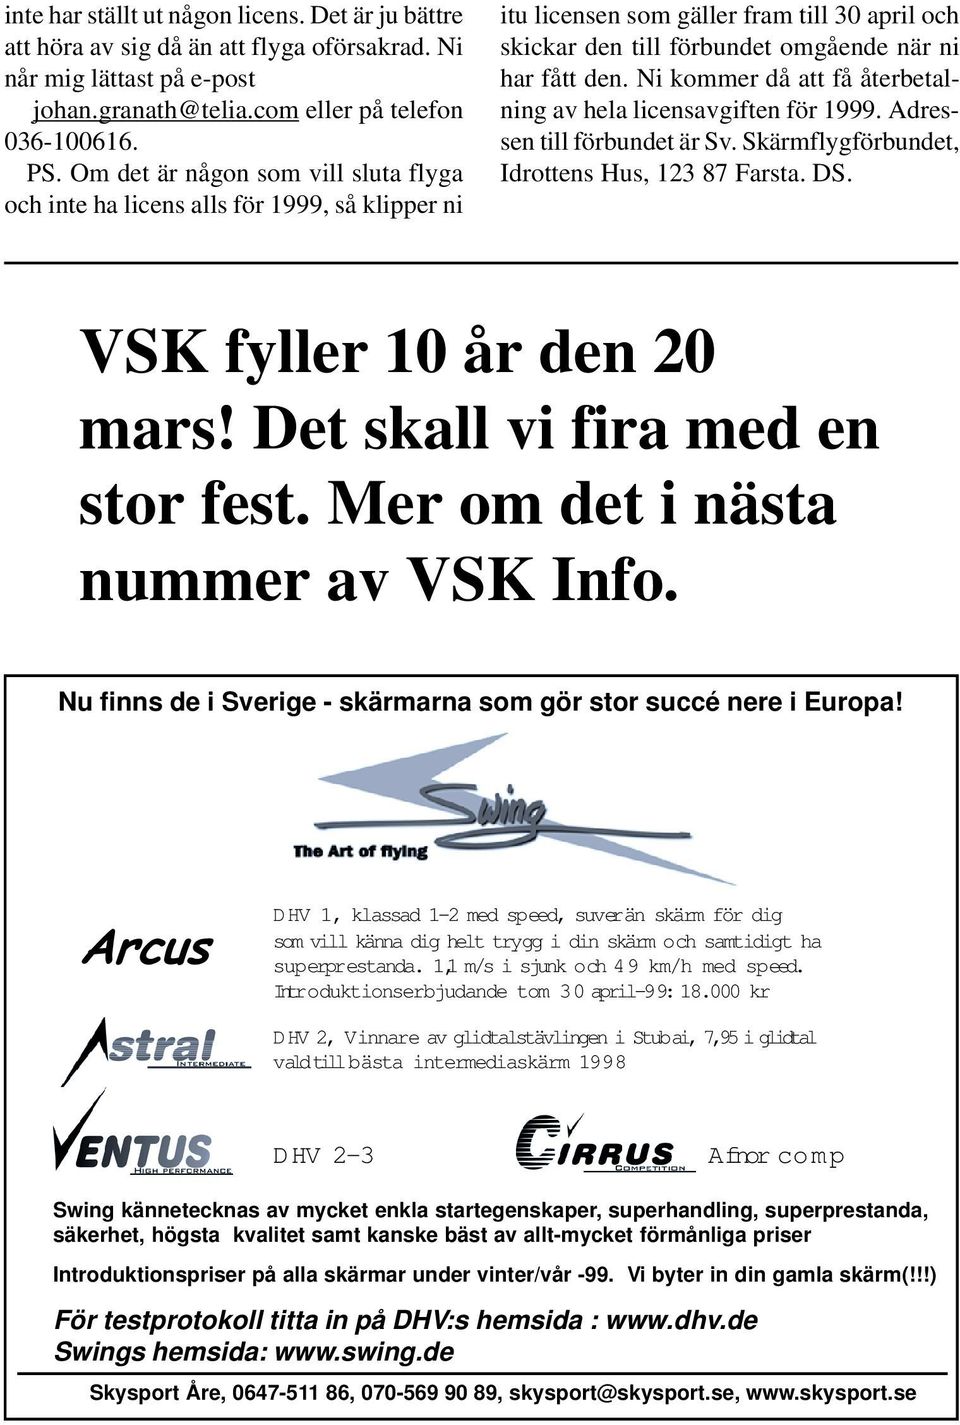 Ni kommer då att få återbetalning av hela licensavgiften för 1999. Adressen till förbundet är Sv. Skärmflygförbundet, Idrottens Hus, 123 87 Farsta. DS. VSK fyller 10 år den 20 mars!